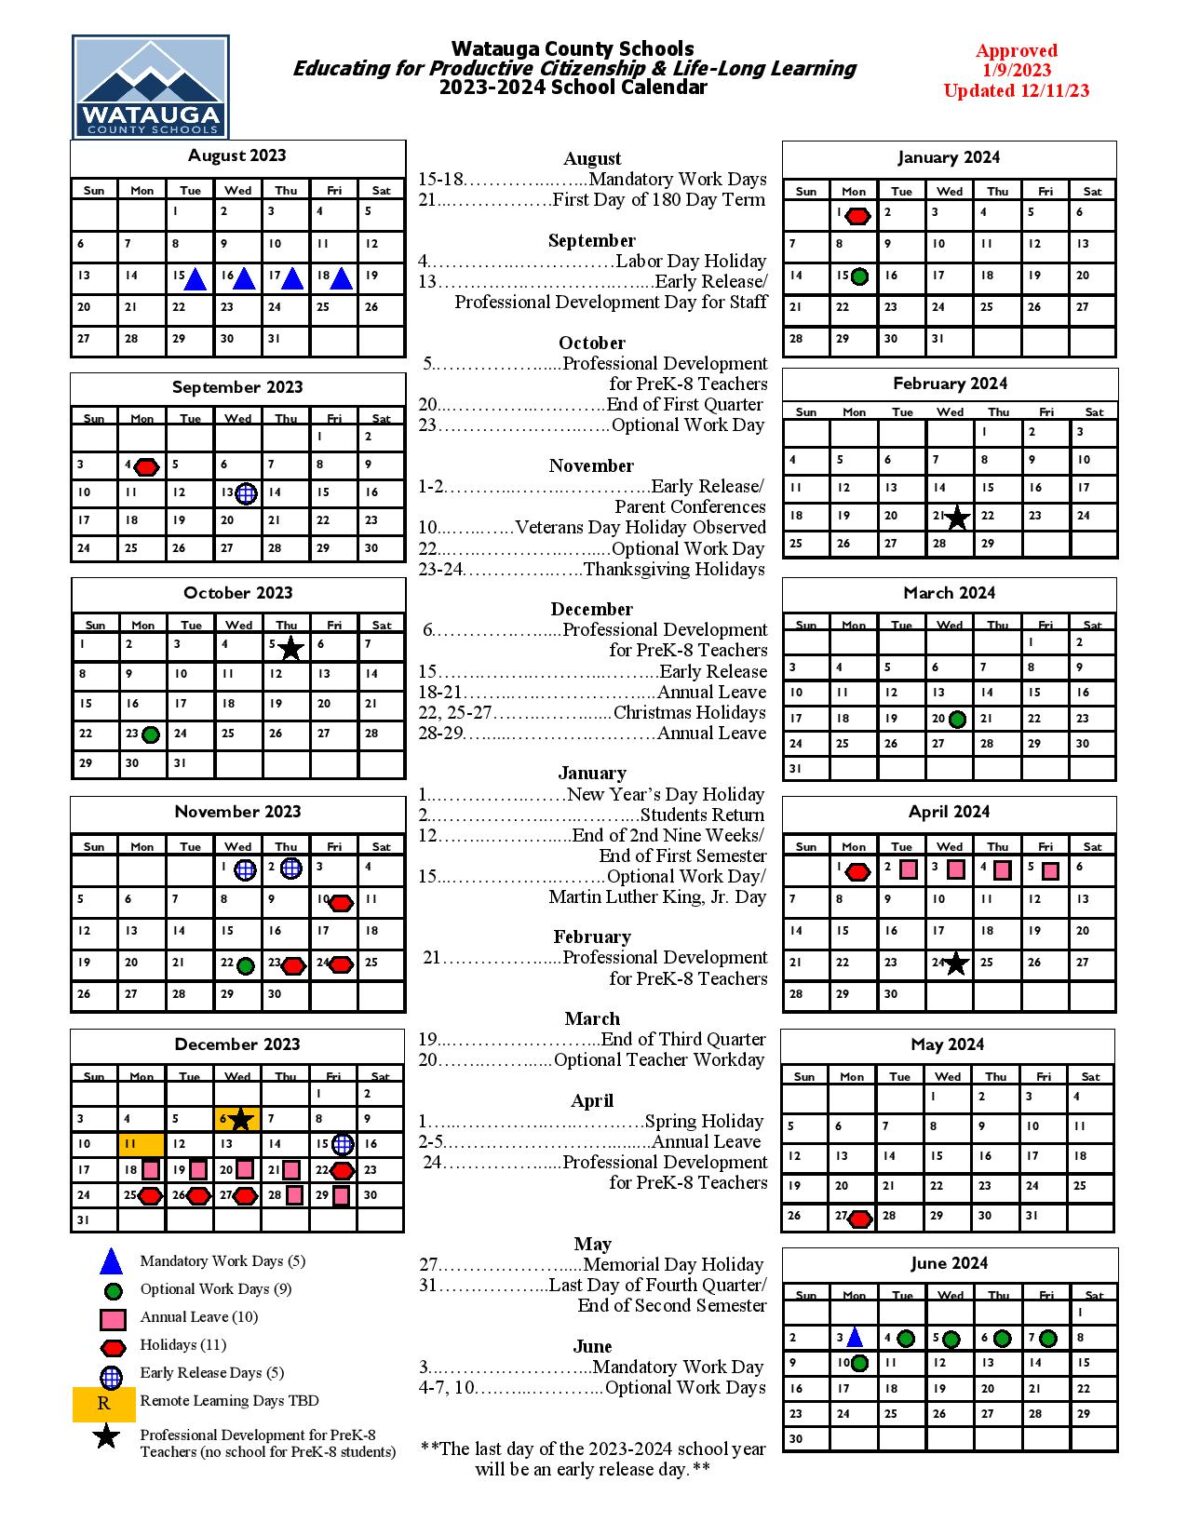 Watauga County Schools Calendar 2023-2024 in PDF